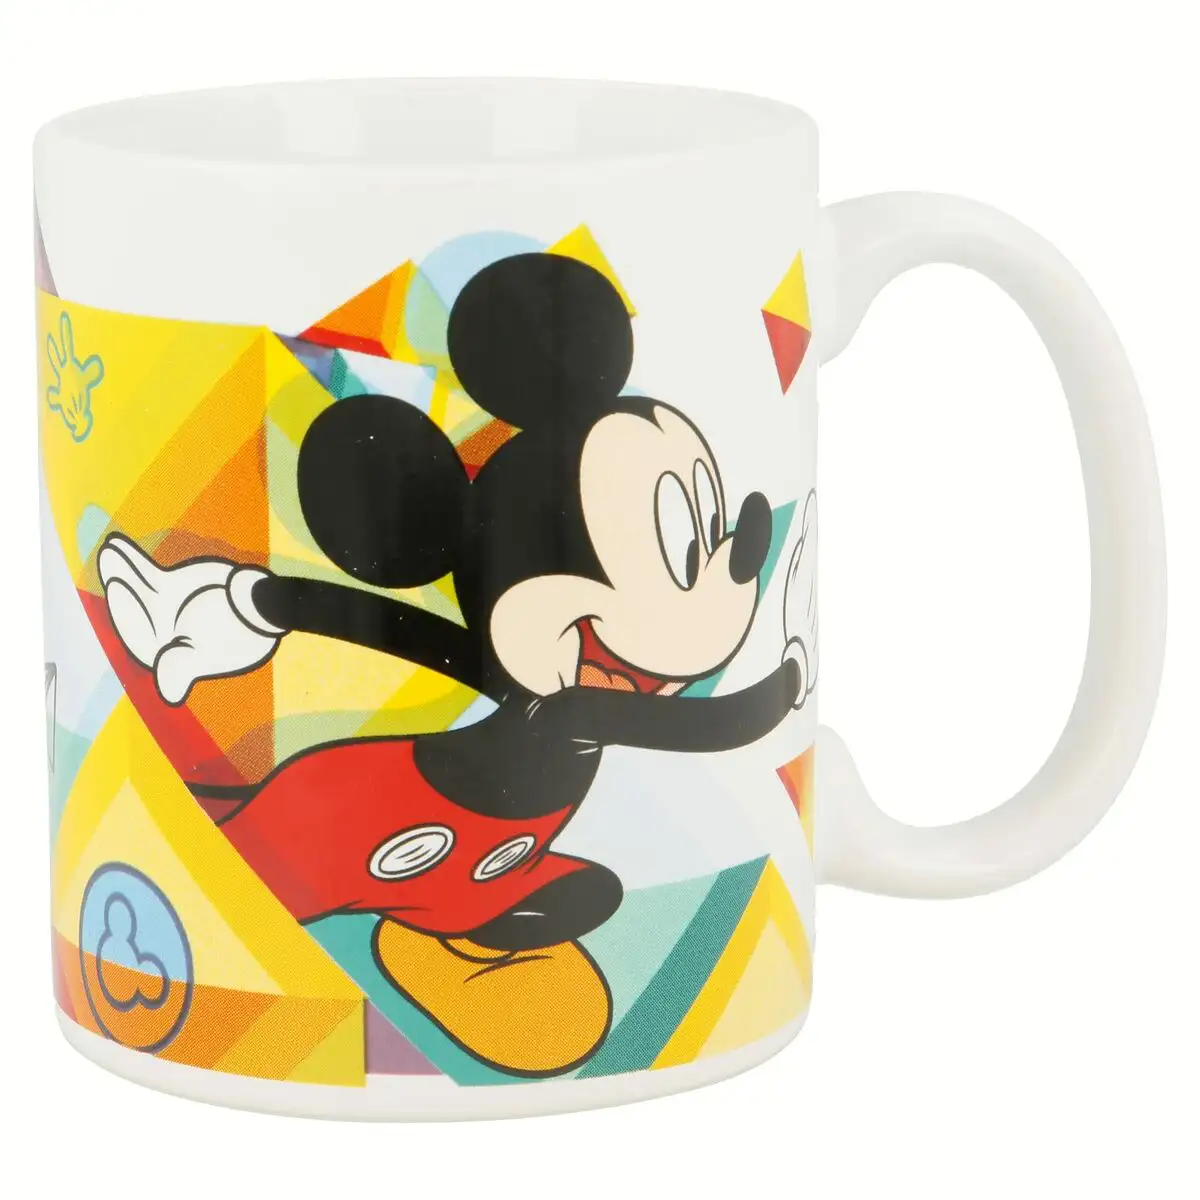 Tasse mug mickey mouse happy smiles ceramique rouge bleu 350 ml _2965. DIAYTAR SENEGAL - Votre Source d'Inspiration Shopping. Parcourez nos rayons et trouvez des articles qui vous inspirent, que ce soit pour votre style, votre maison ou votre vie quotidienne.